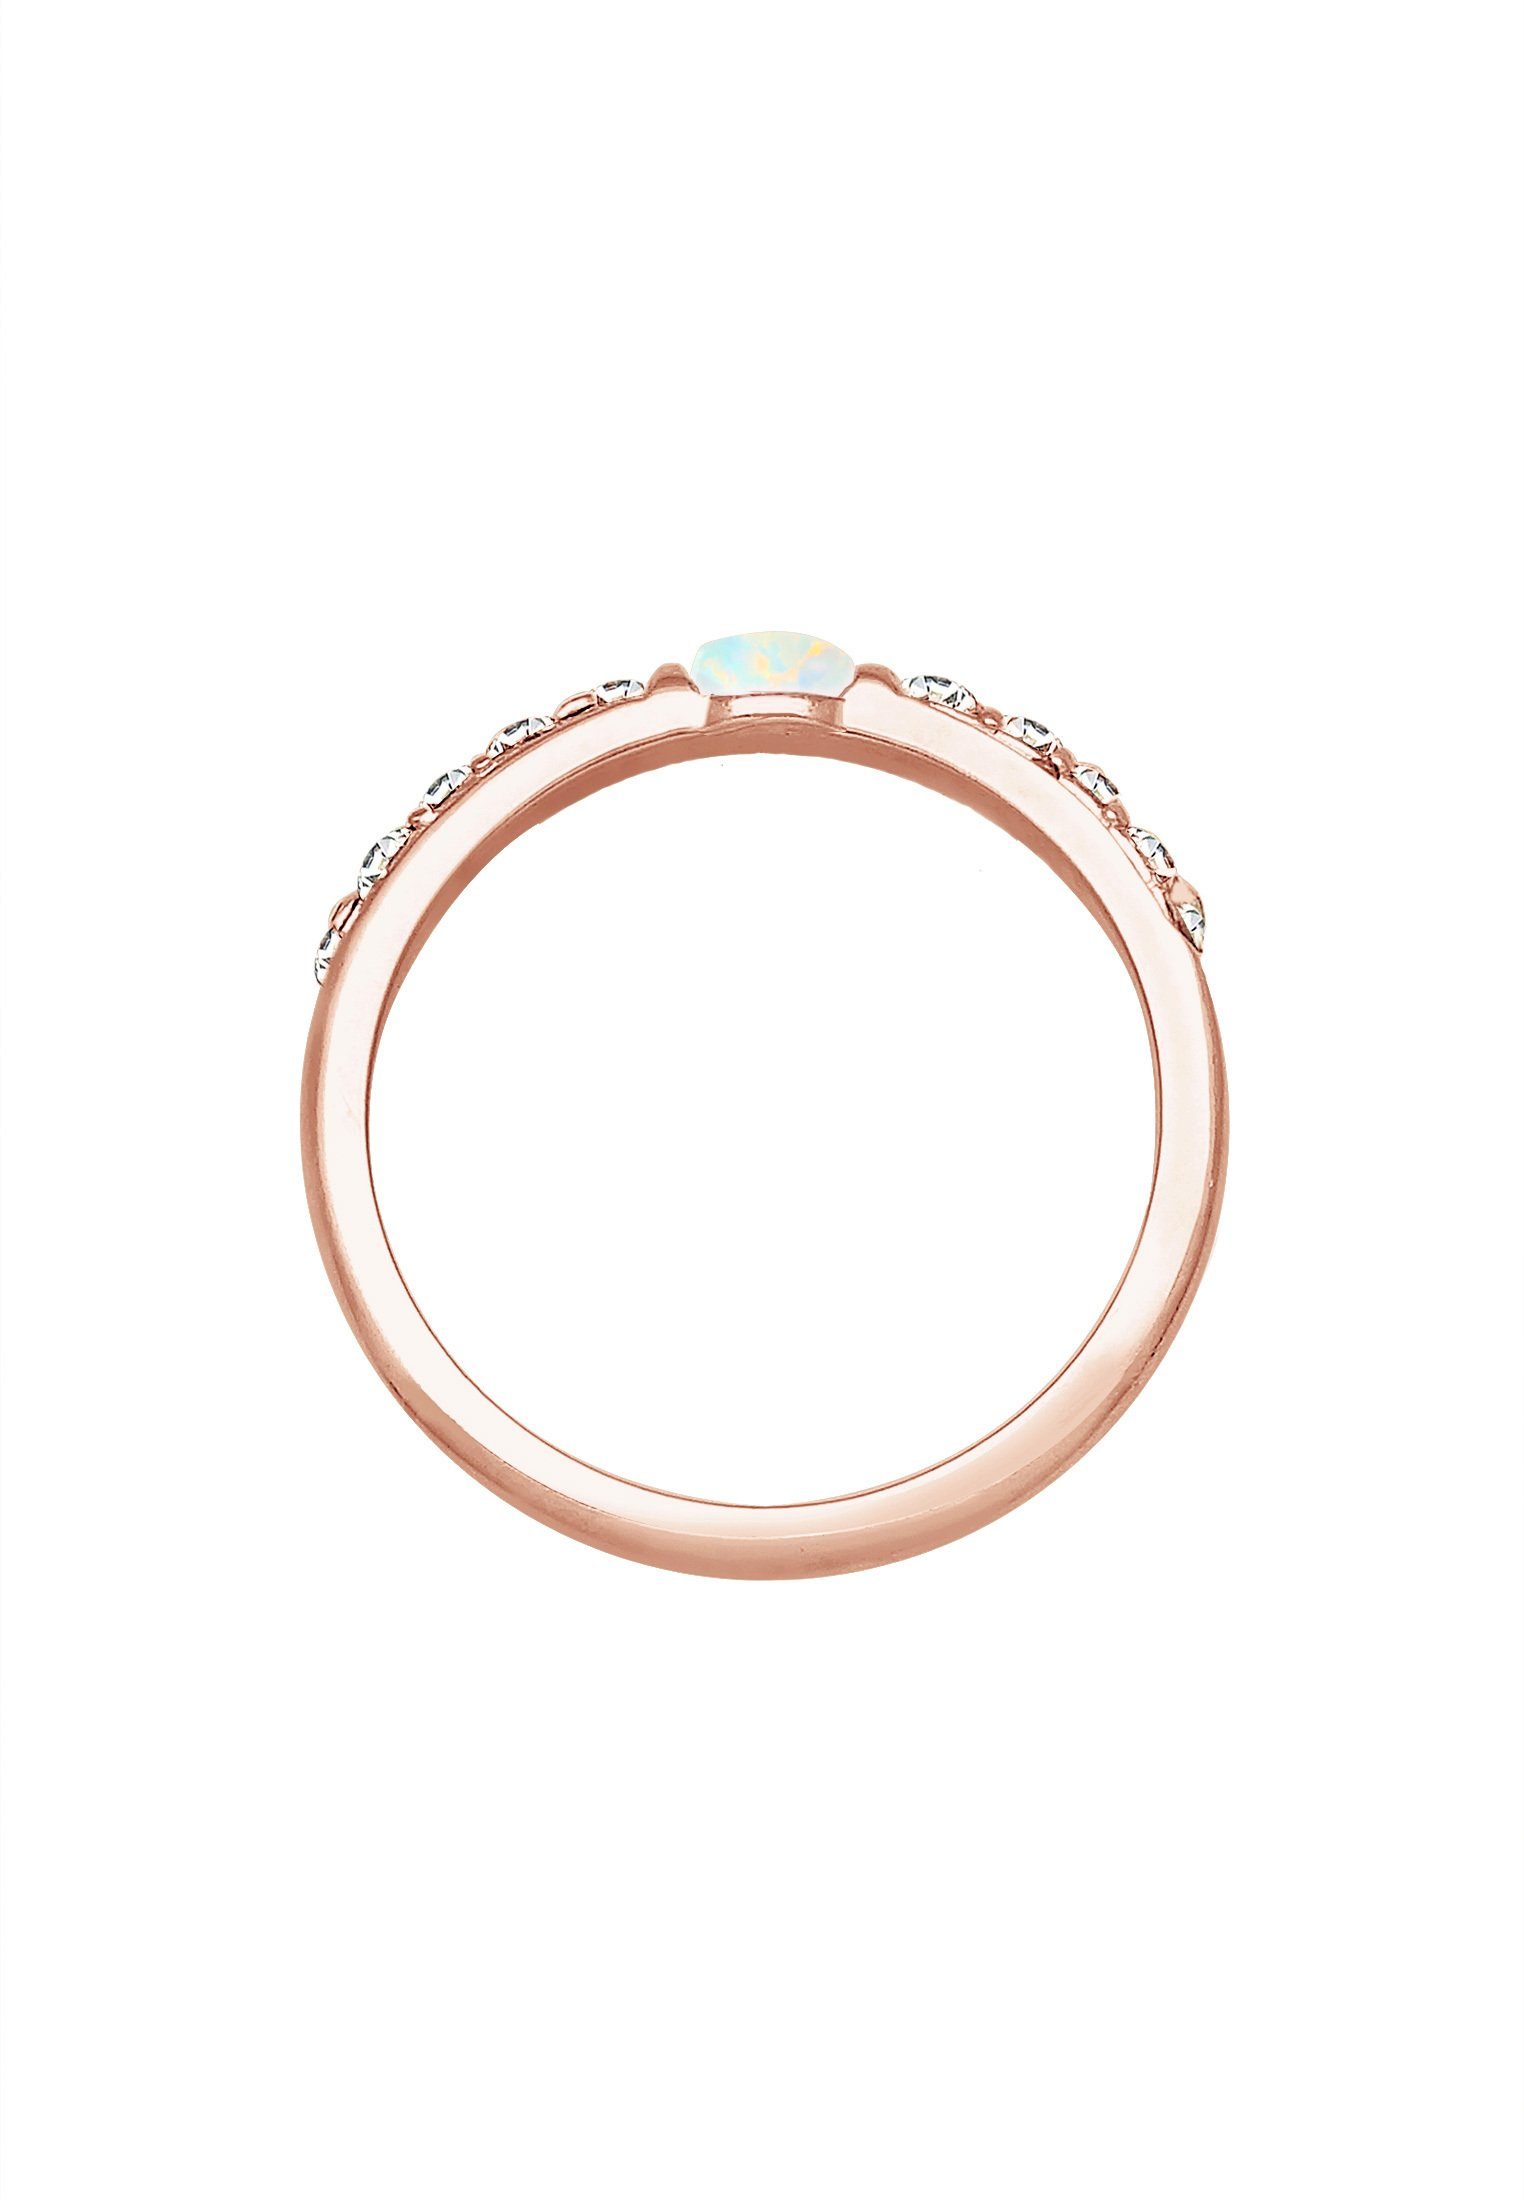 Elli Premium Verlobungsring Opal Silber Kristalle Sterling 925er Rosegold